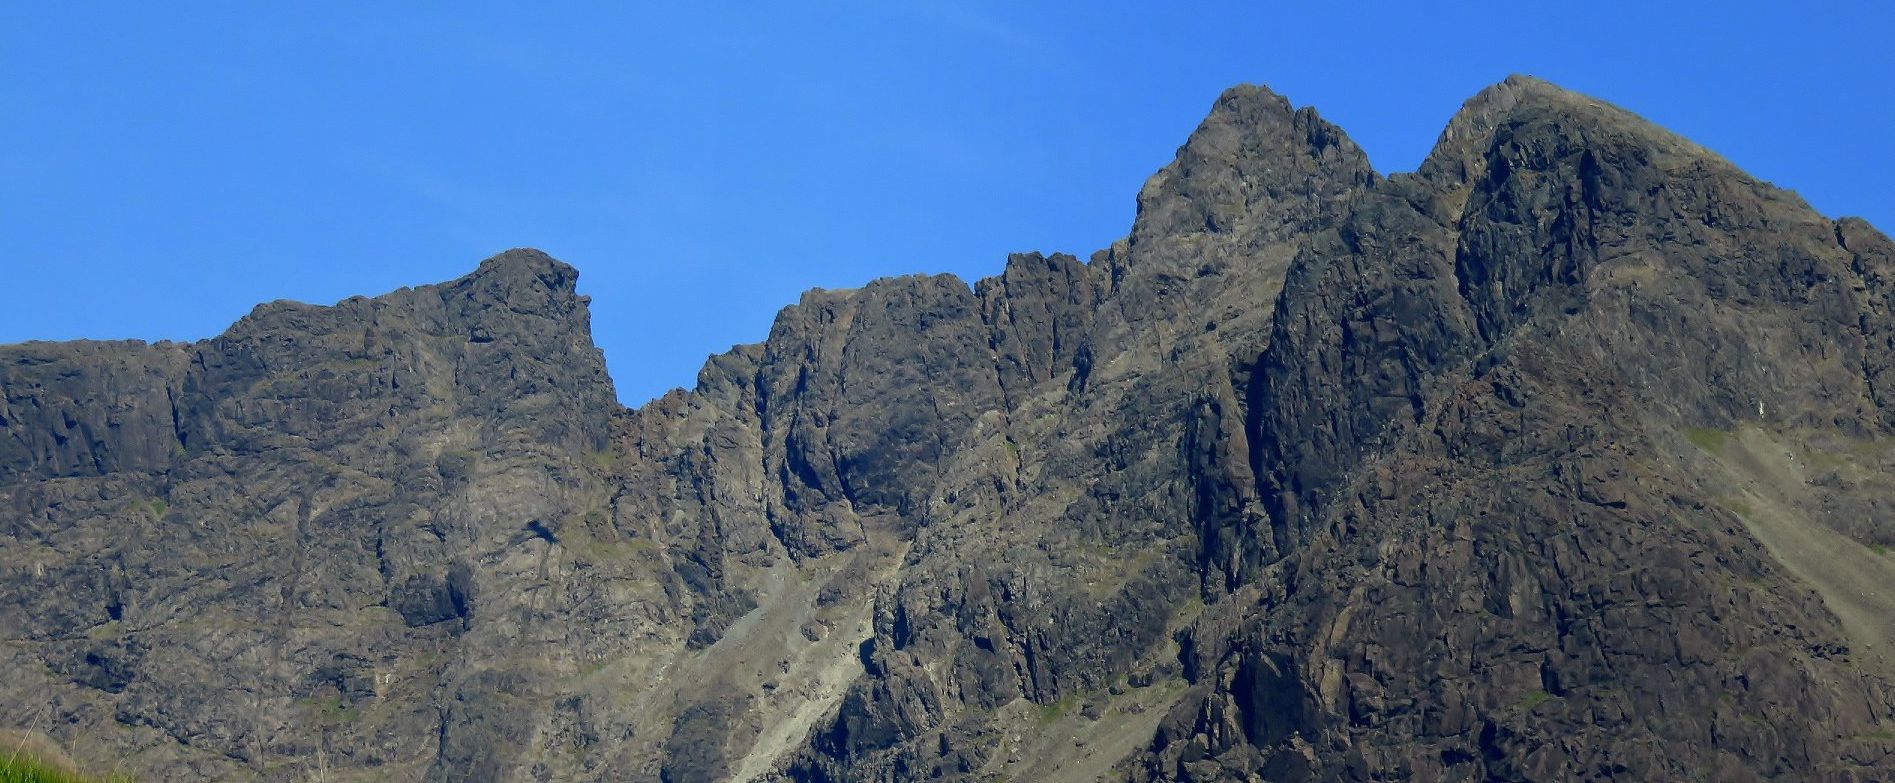 Skye Ridge - Sgurr Alasdair